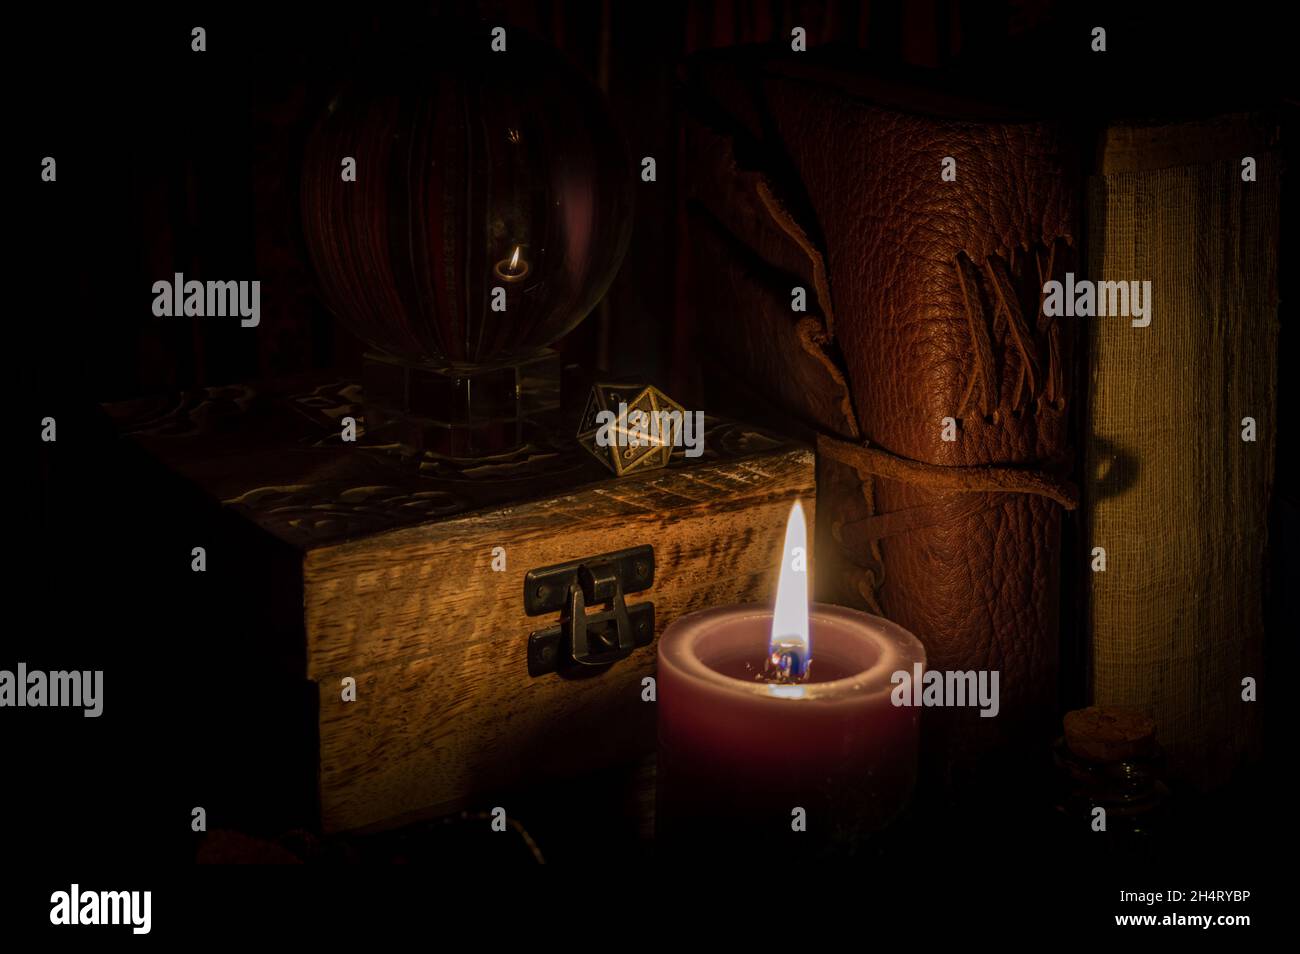 Immagine di un dado metallico a 20 lati per giocare di ruolo su una scatola di legno accanto a una sfera di cristallo e vecchi libri illuminati da lume di candela Foto Stock